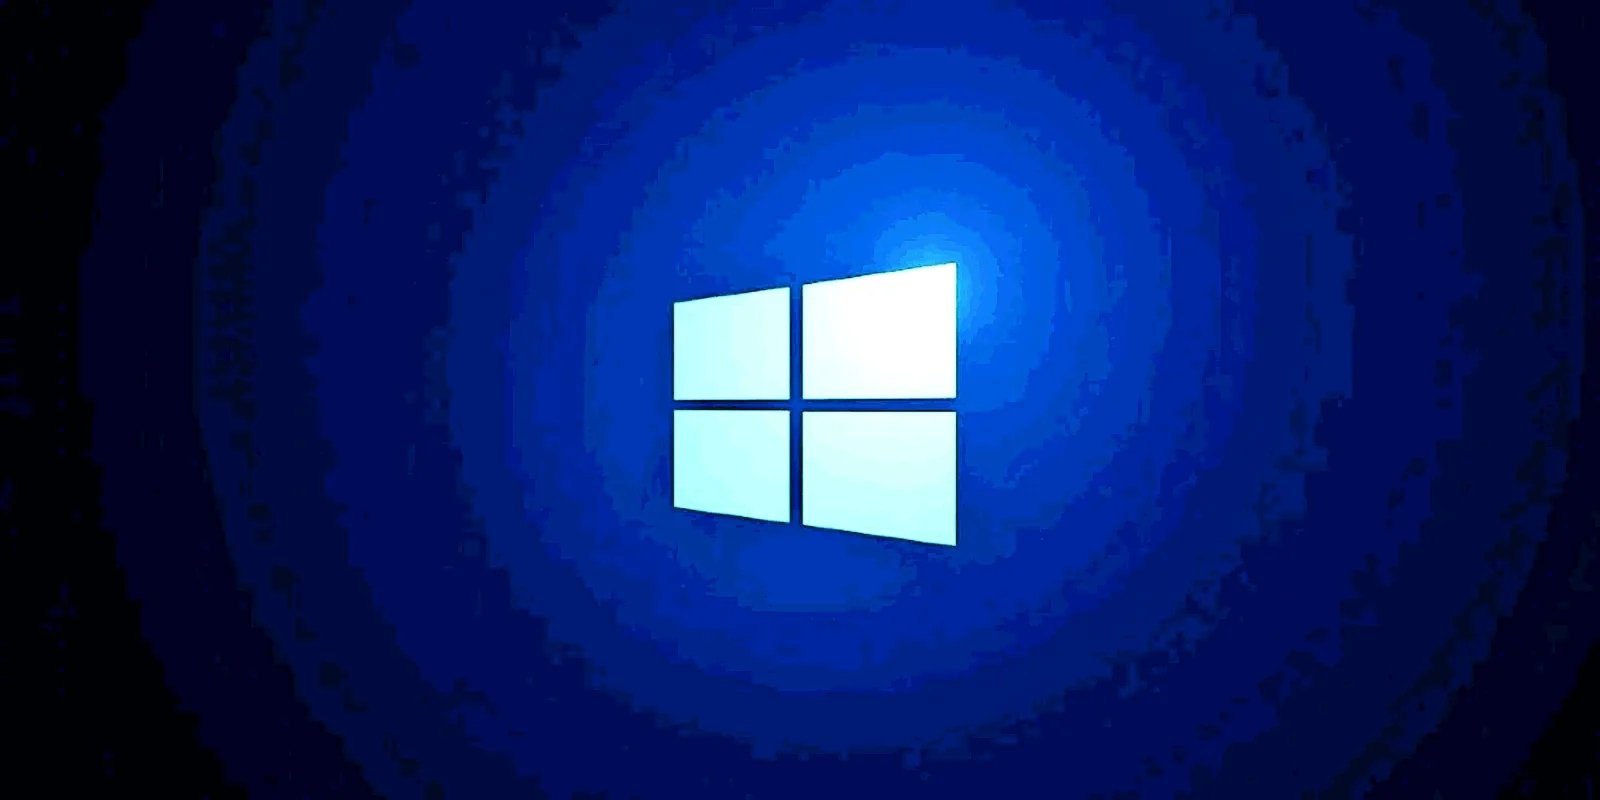 Windows 11 Copilot